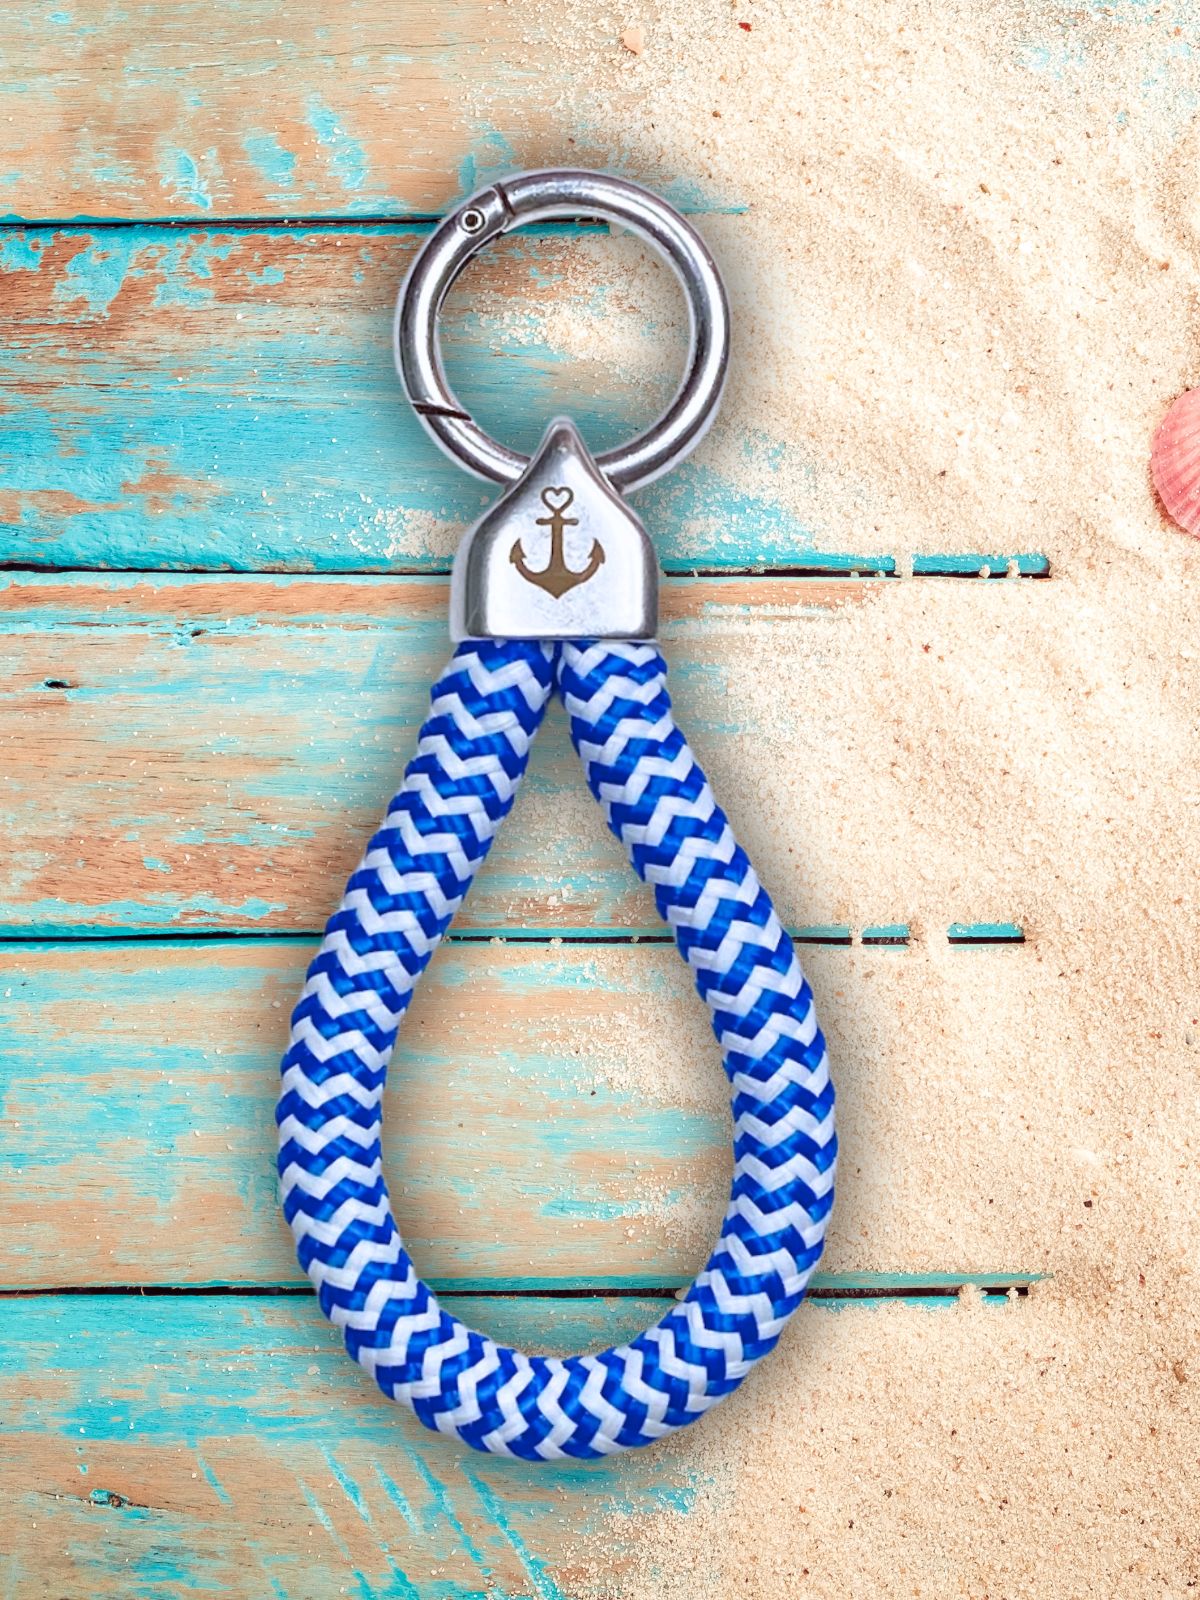 Schlüsselanhänger "Anker" aus Segeltau - blau weiß--HYGGEBI-€12,90